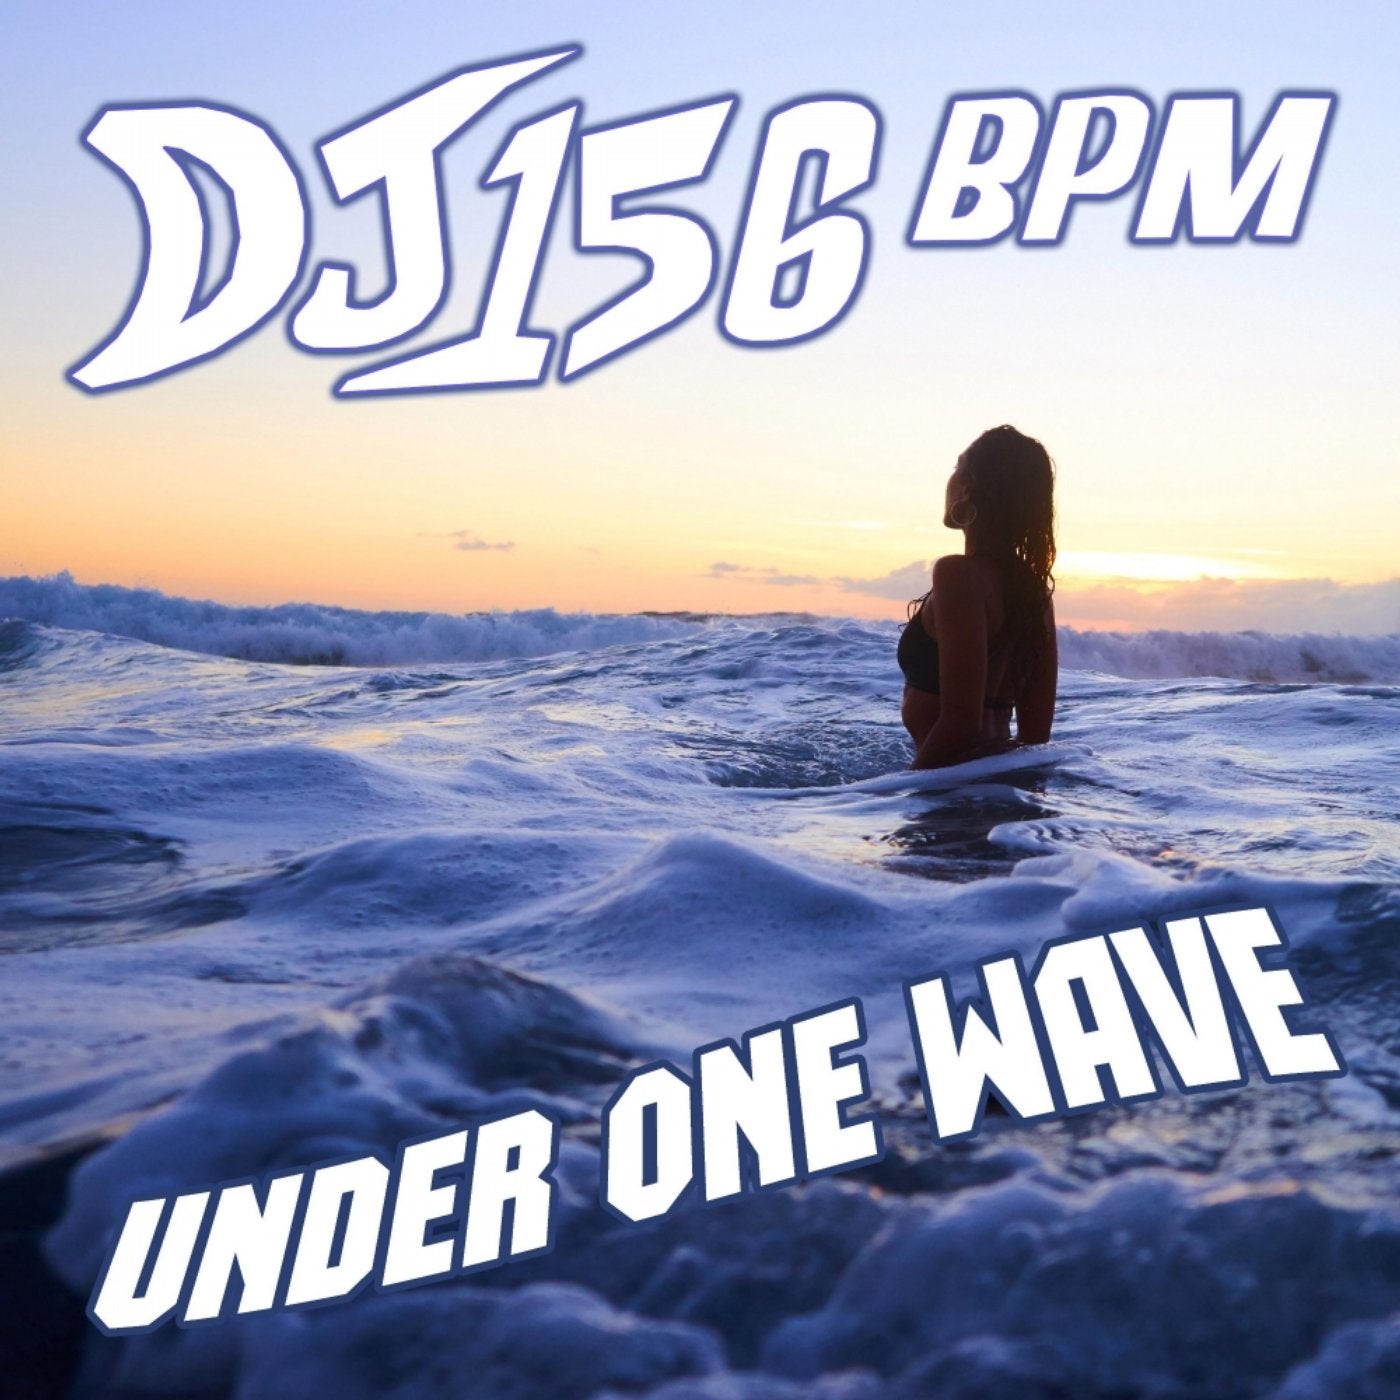 Under One Wave